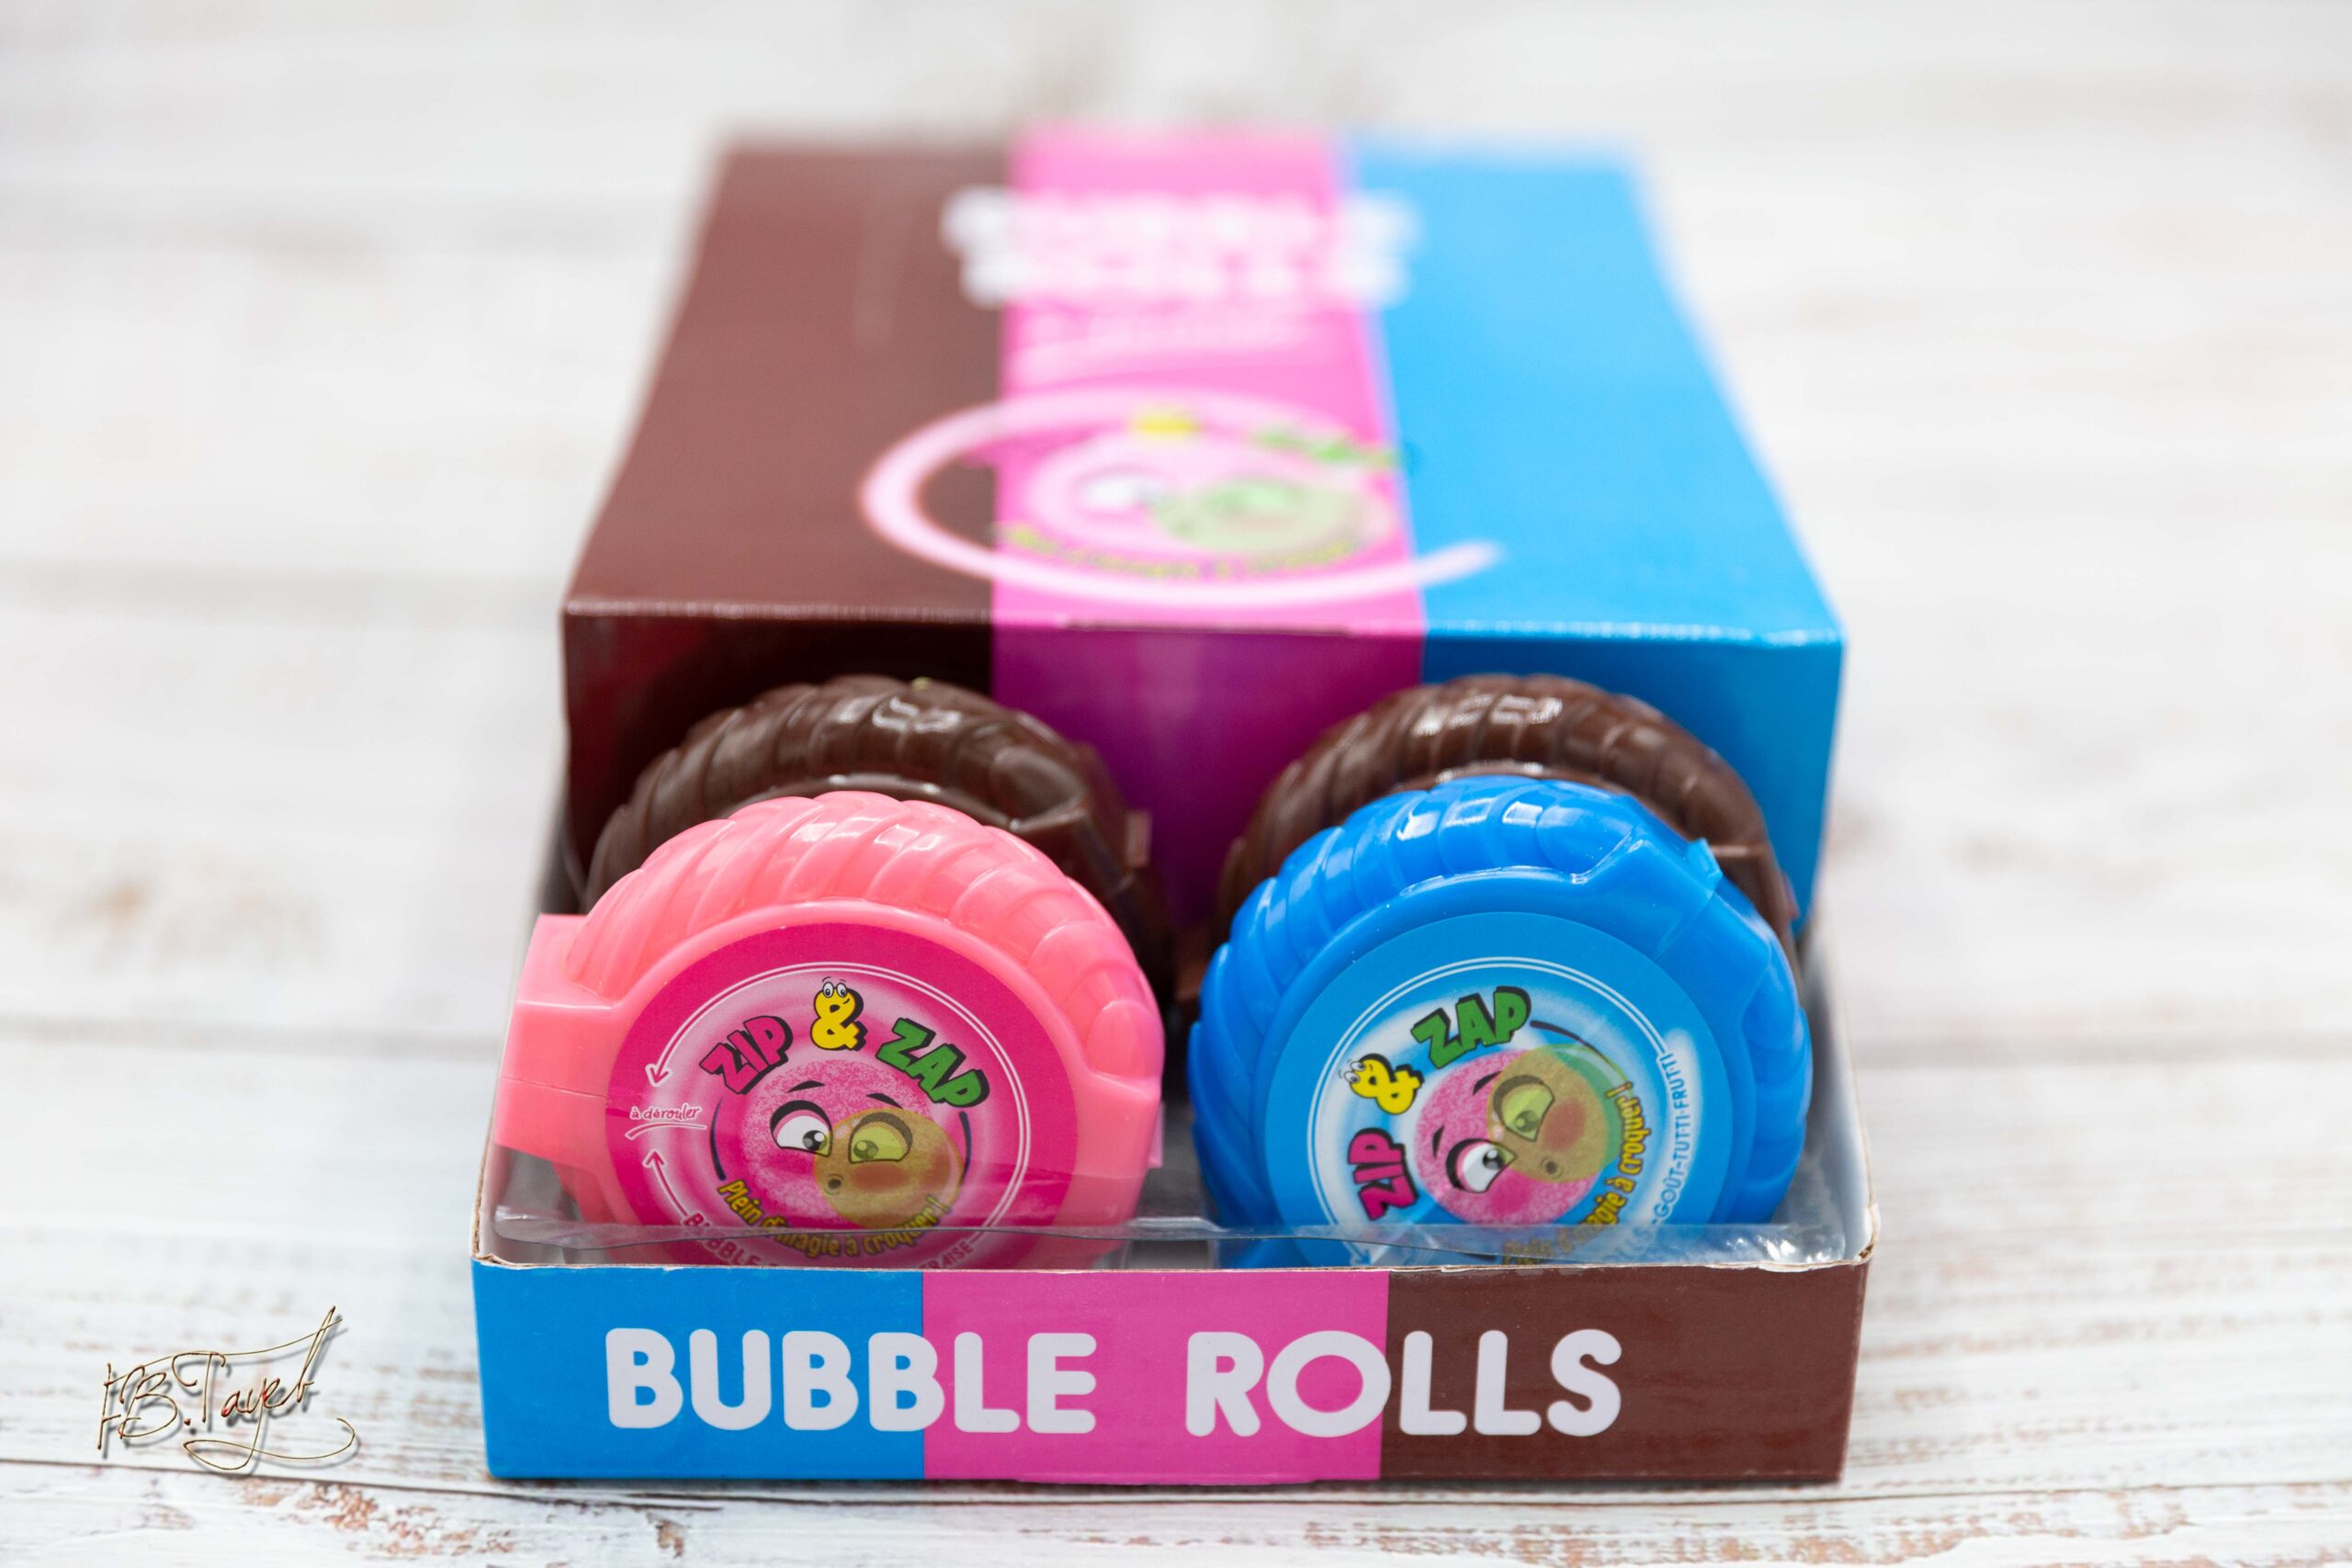 Bubble rolls